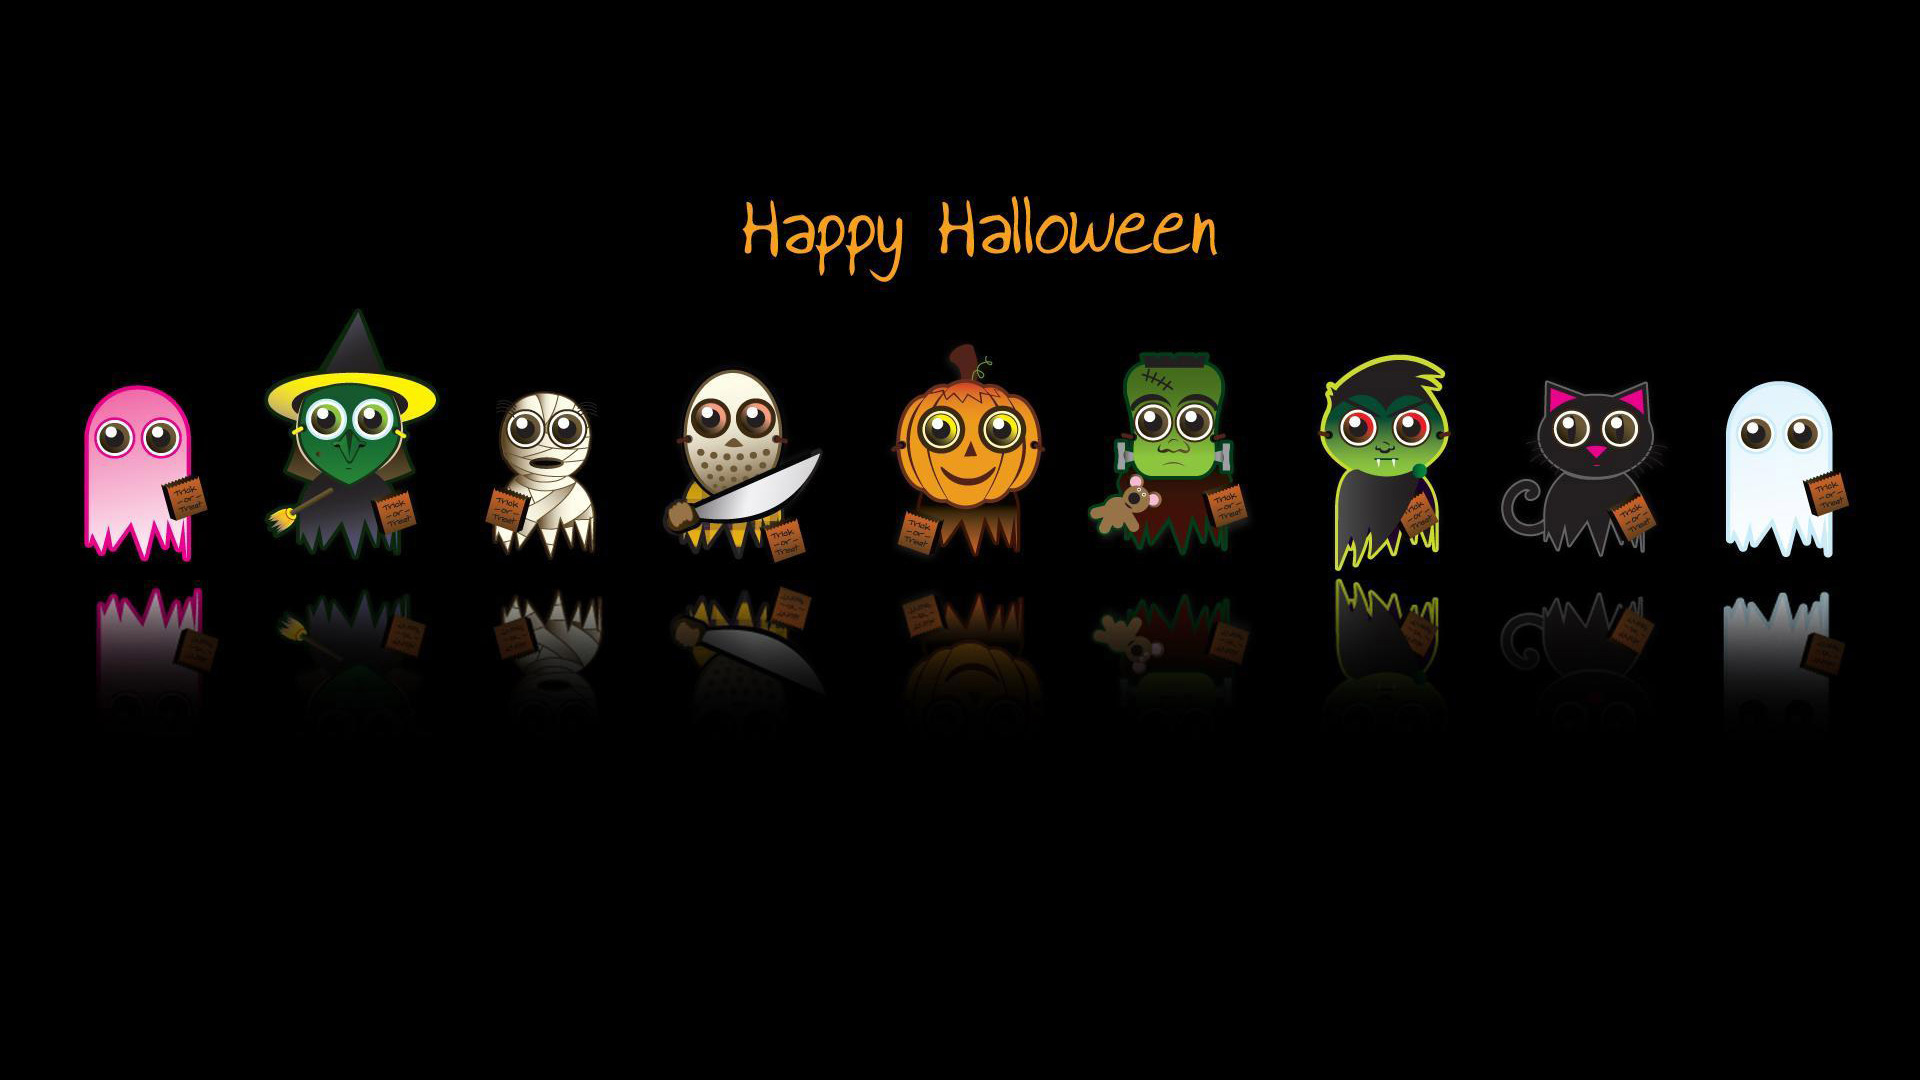 Happy Halloween Wallpaper Full HD 1080p Desktop